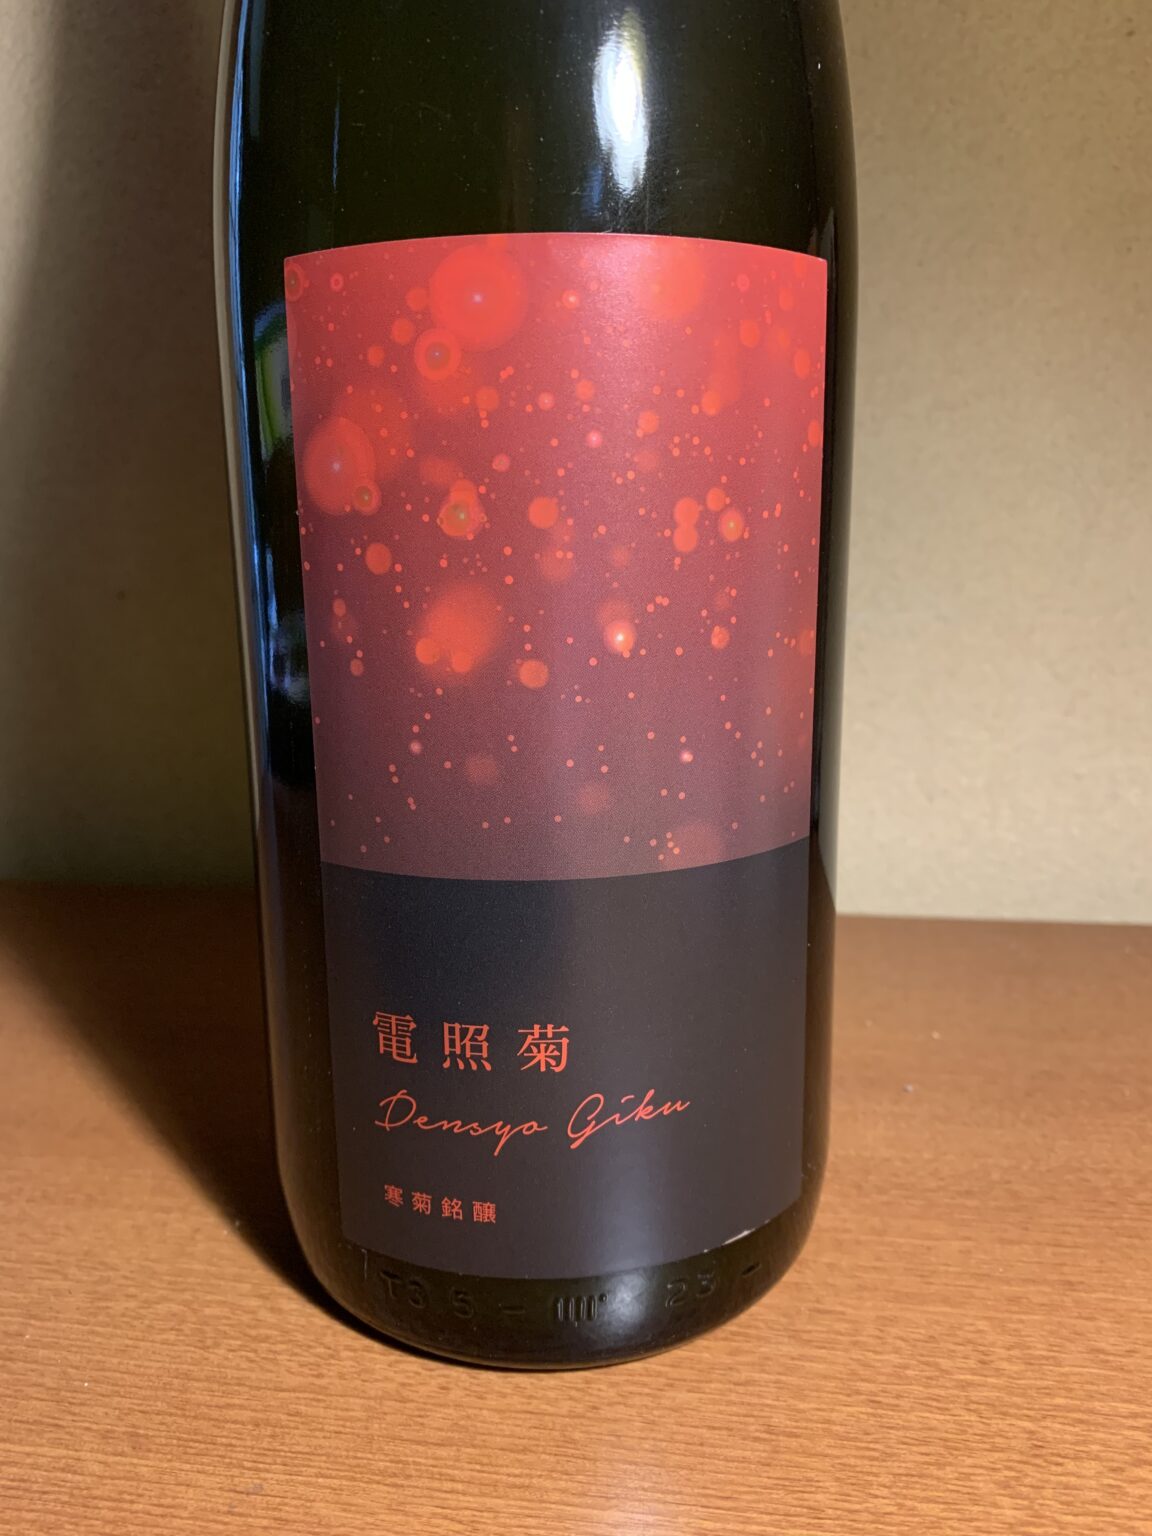 千葉の日本酒『電照菊純米大吟醸』は九十九里浜のミネラルを一杯に含んだジューシーな味わい